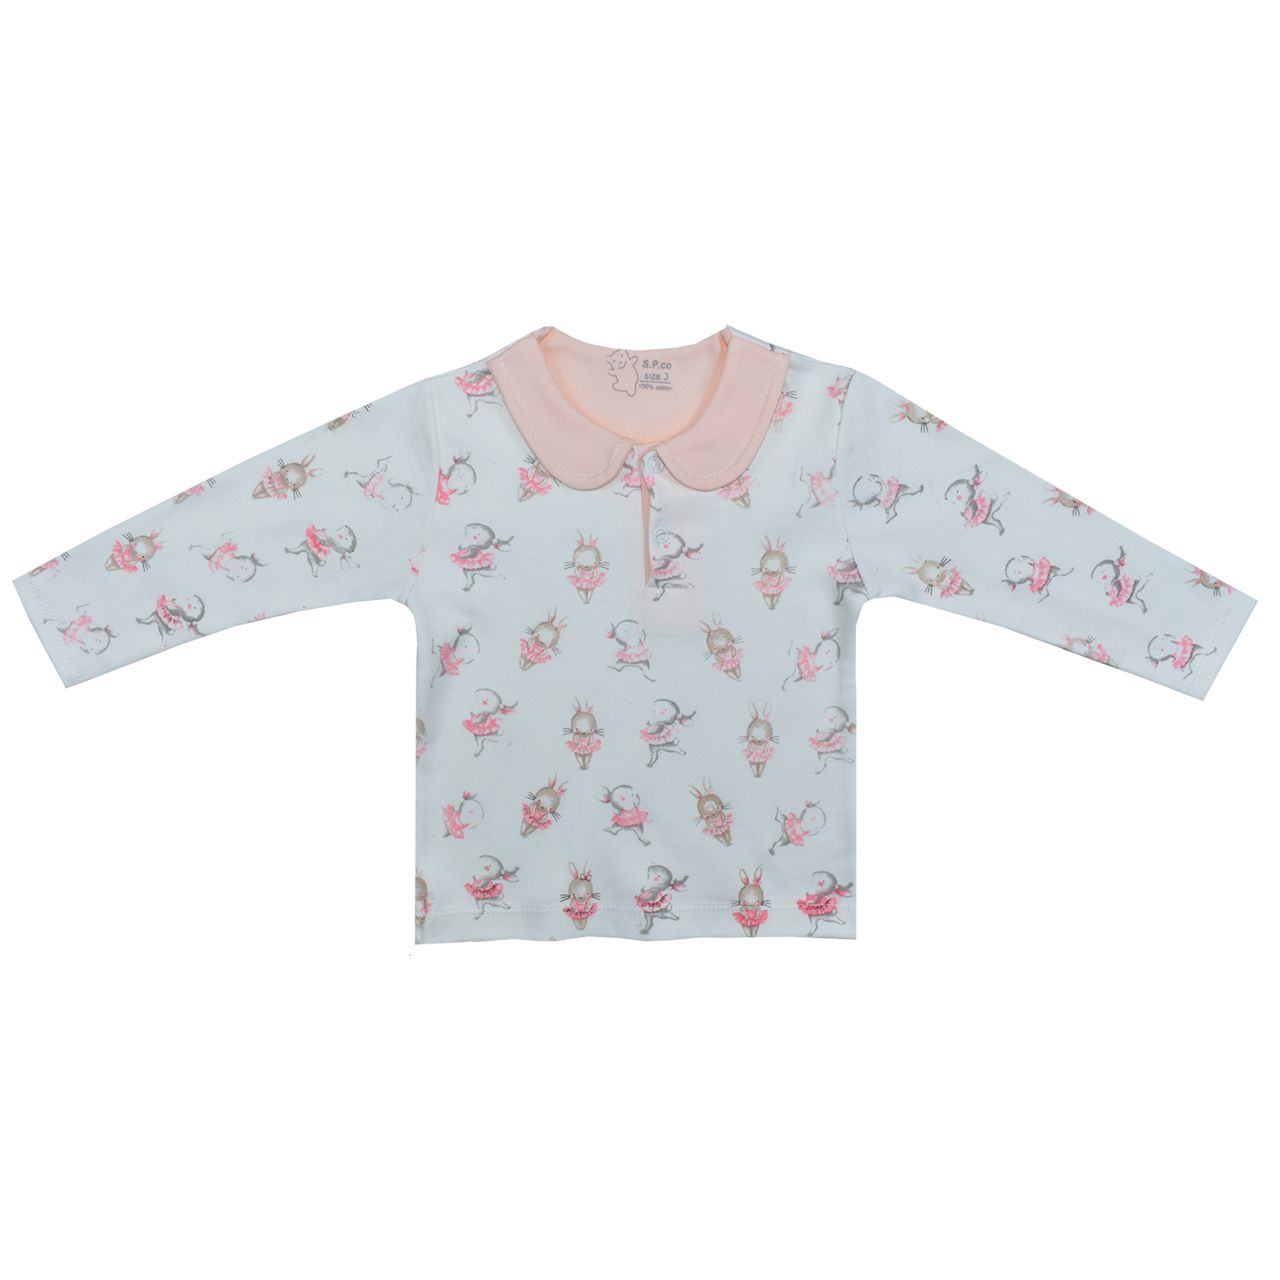 ست تی شرت و شلوار نوزادی اسپیکو مدل پارادایس کد 3 -  - 5